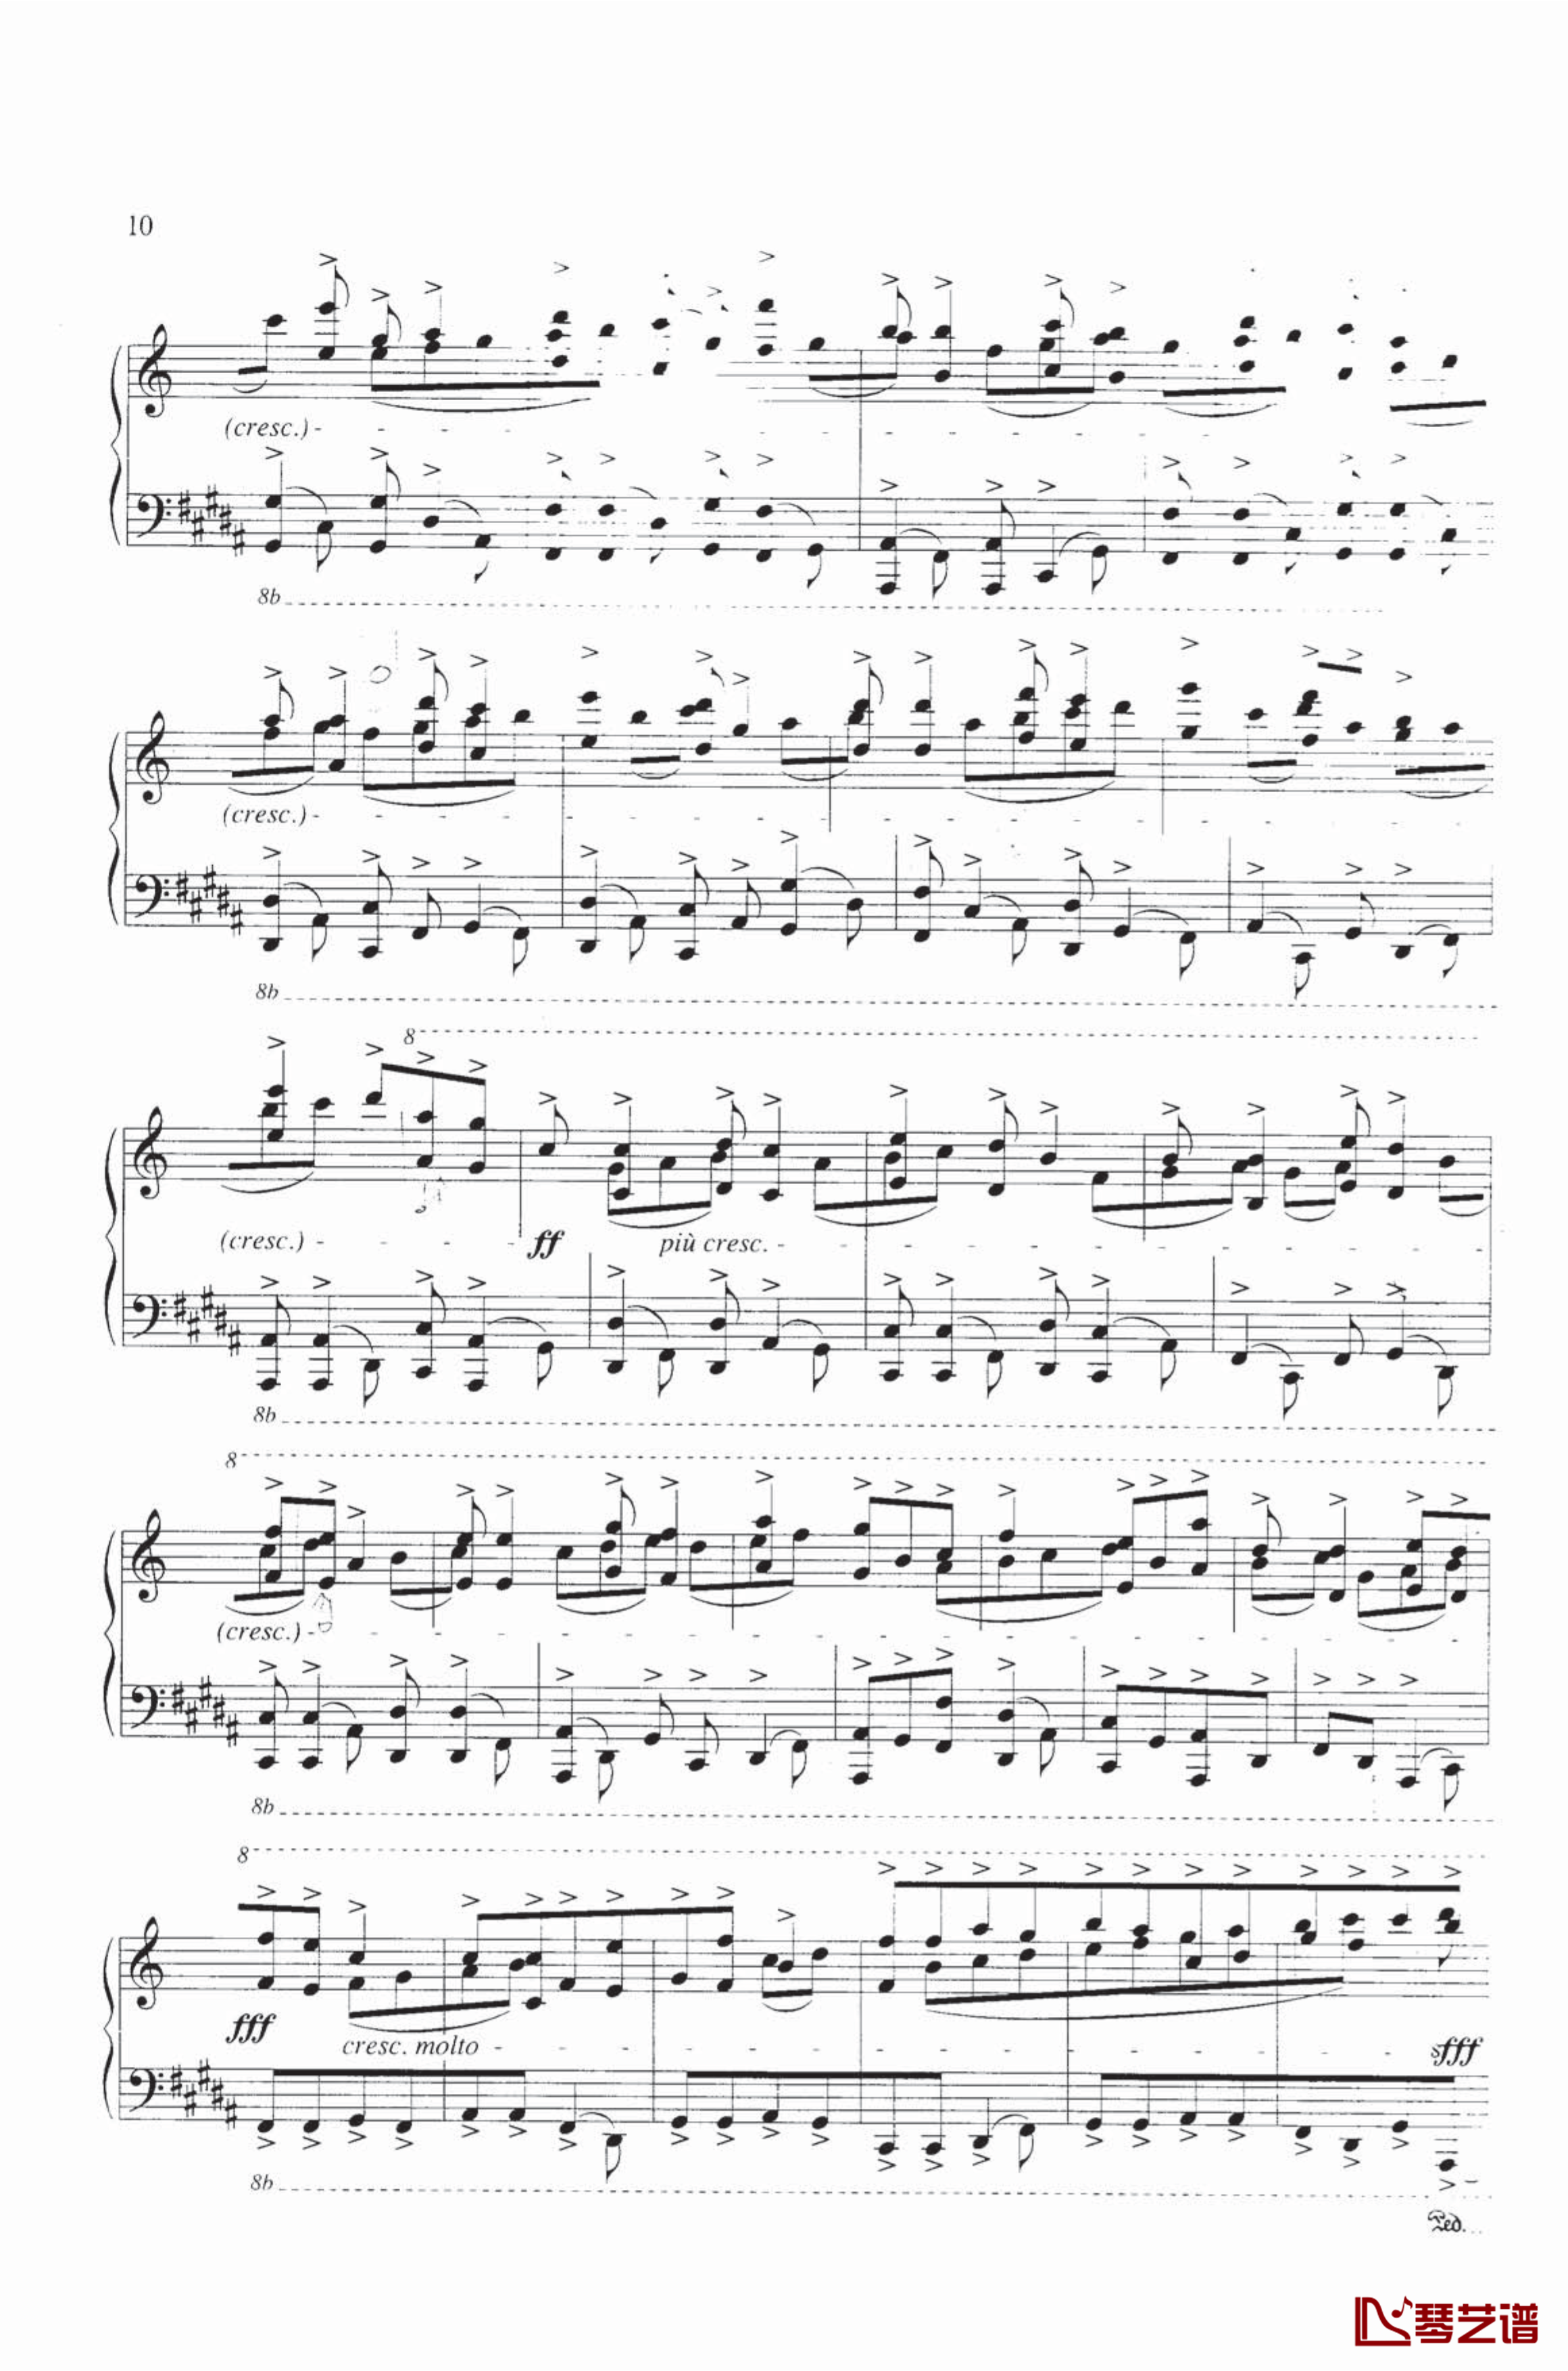 钢琴练习曲NO.1钢琴谱-里盖蒂5